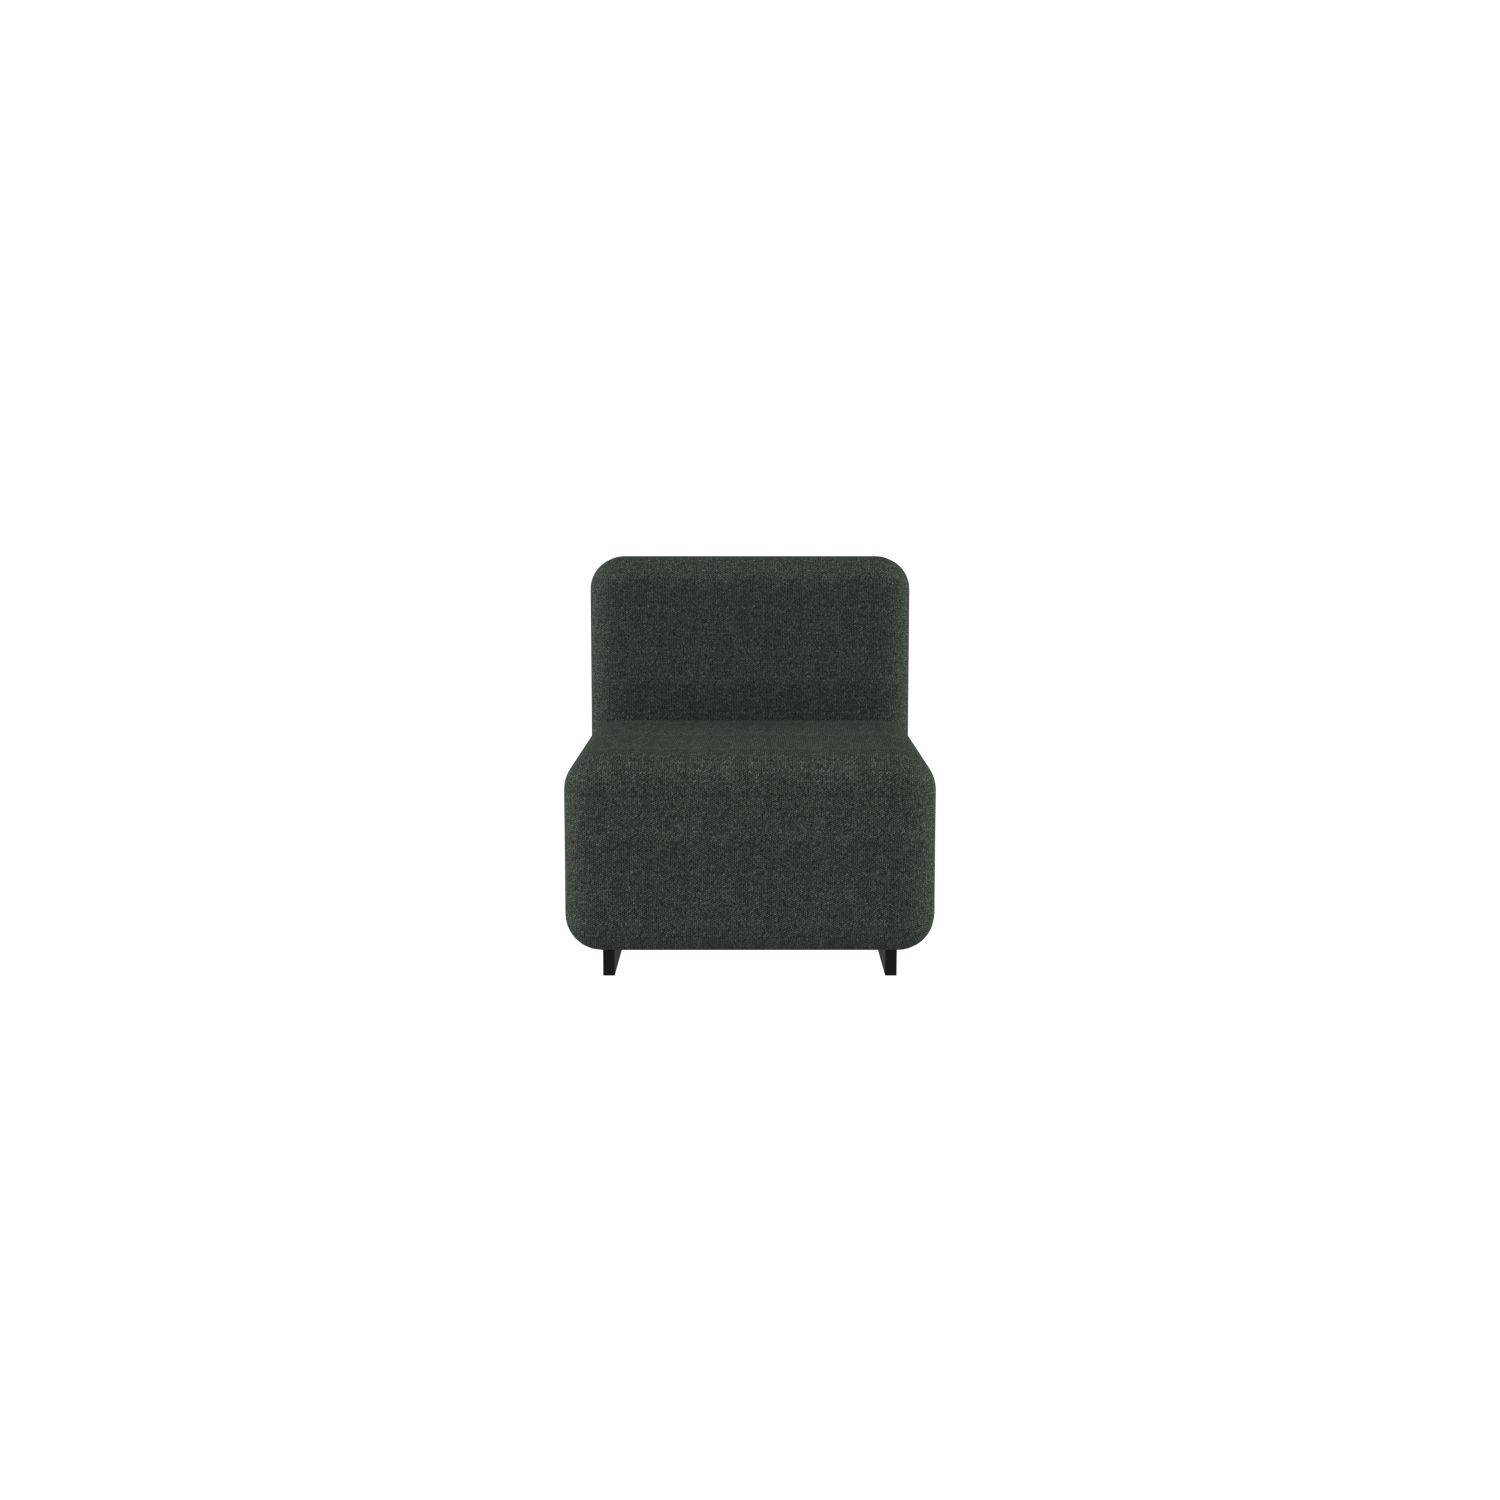 lensvelt fabio novembre balance armchair without armrest moss summer green 38 black ral9005